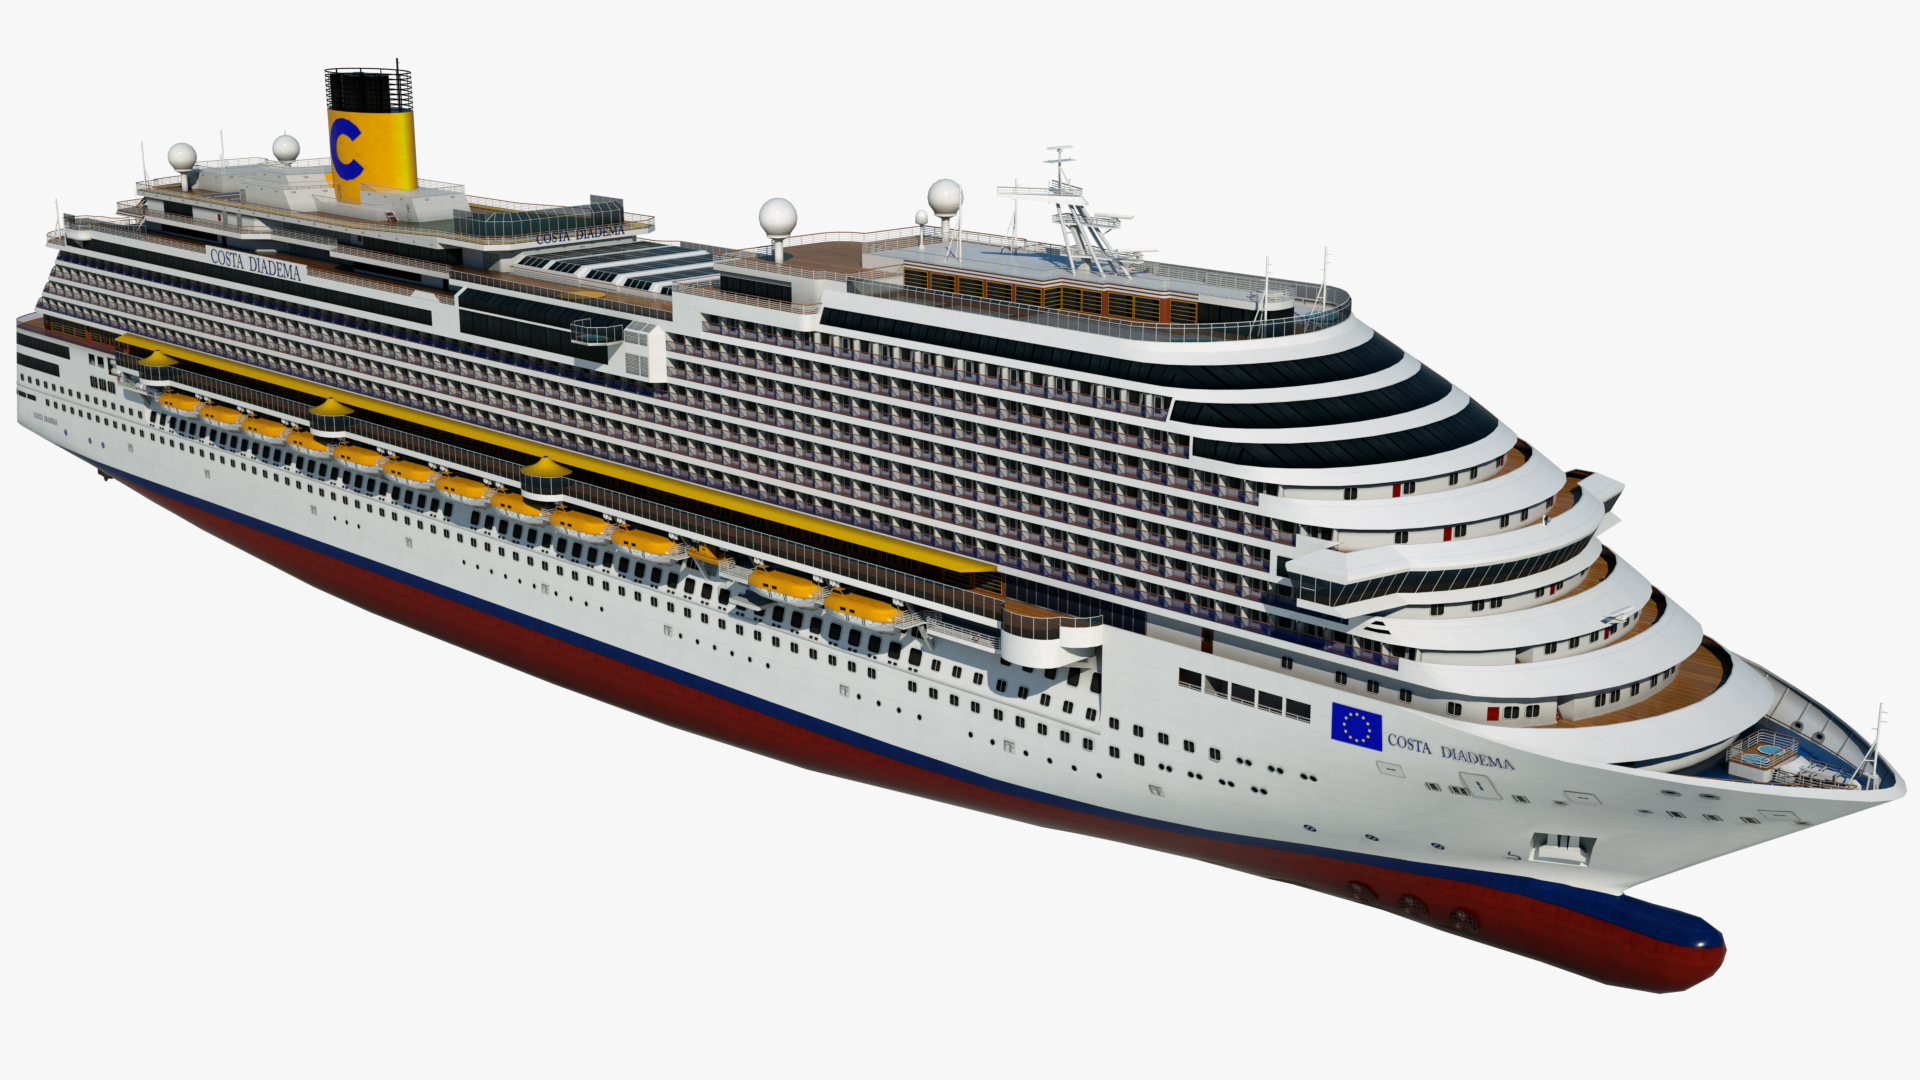 Лего круизный лайнер Costa Concordia